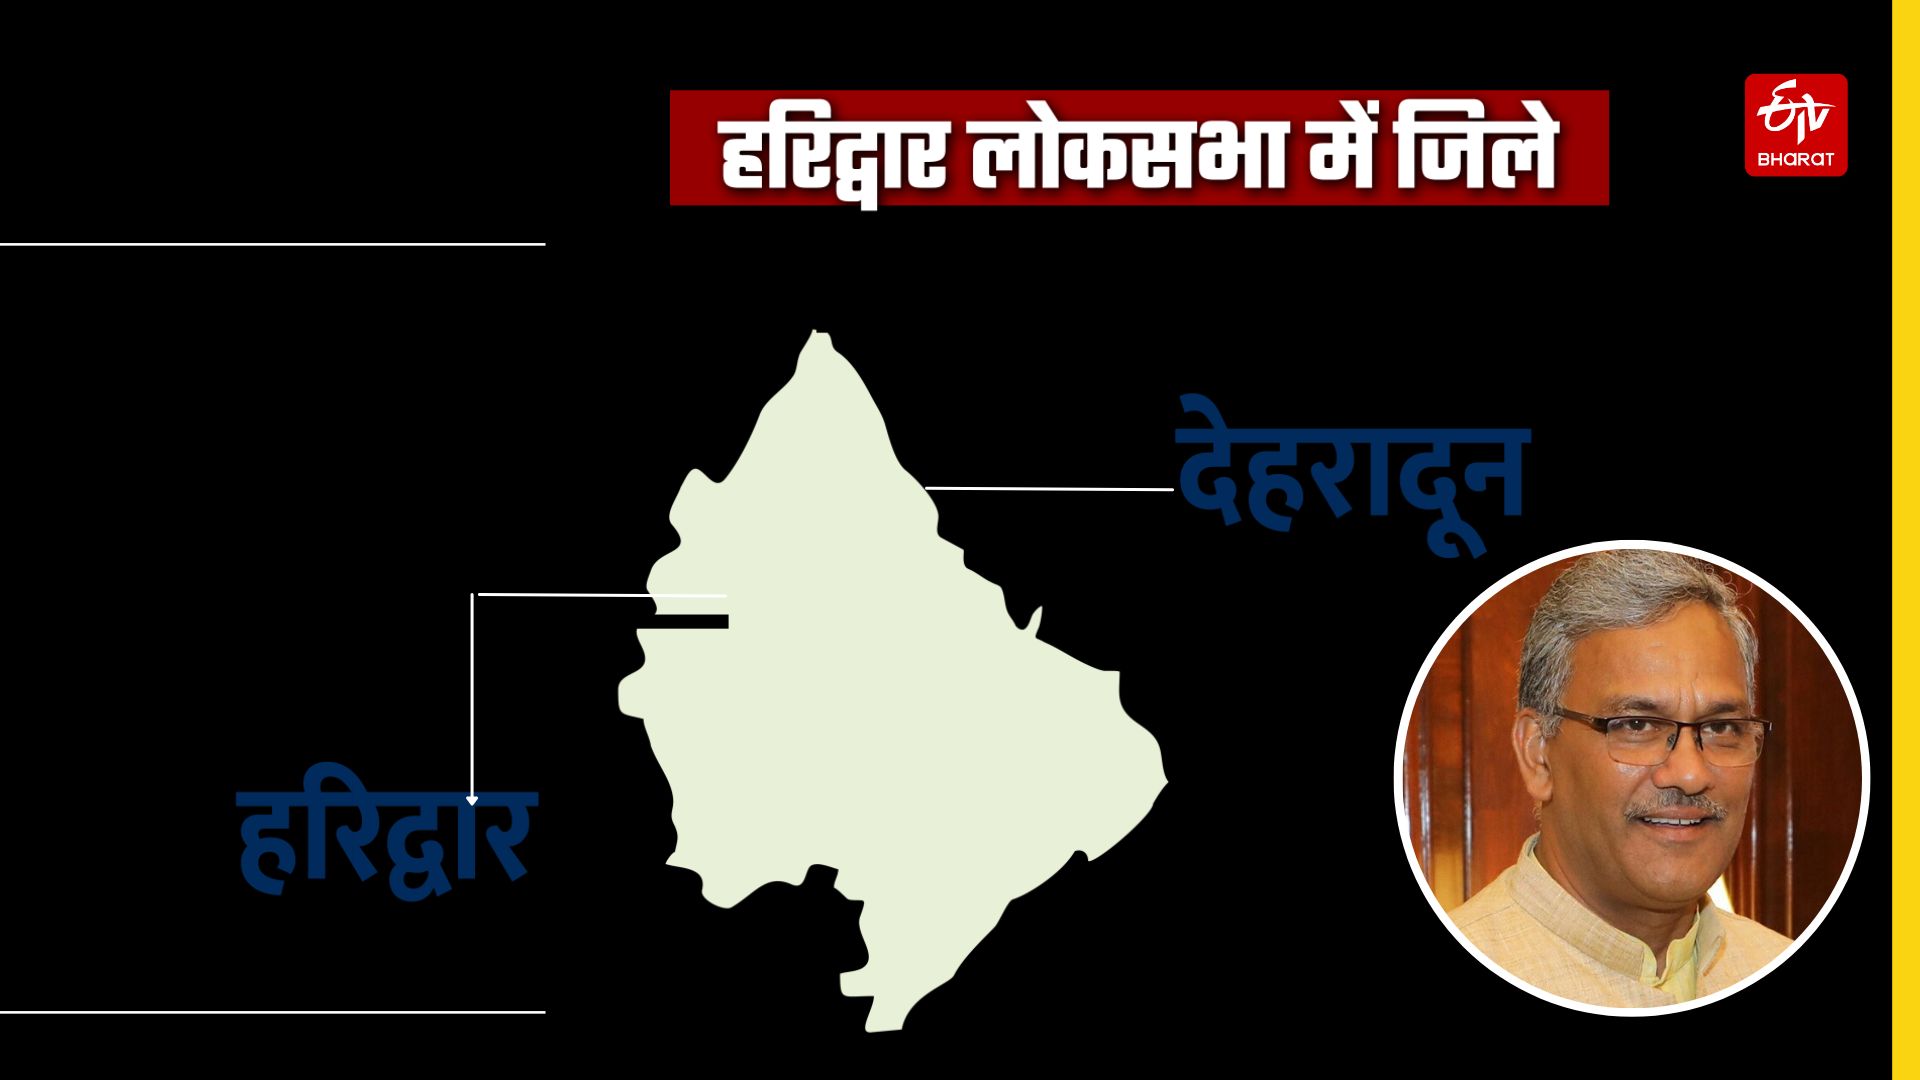 Challenges for BJP in Uttarakhand